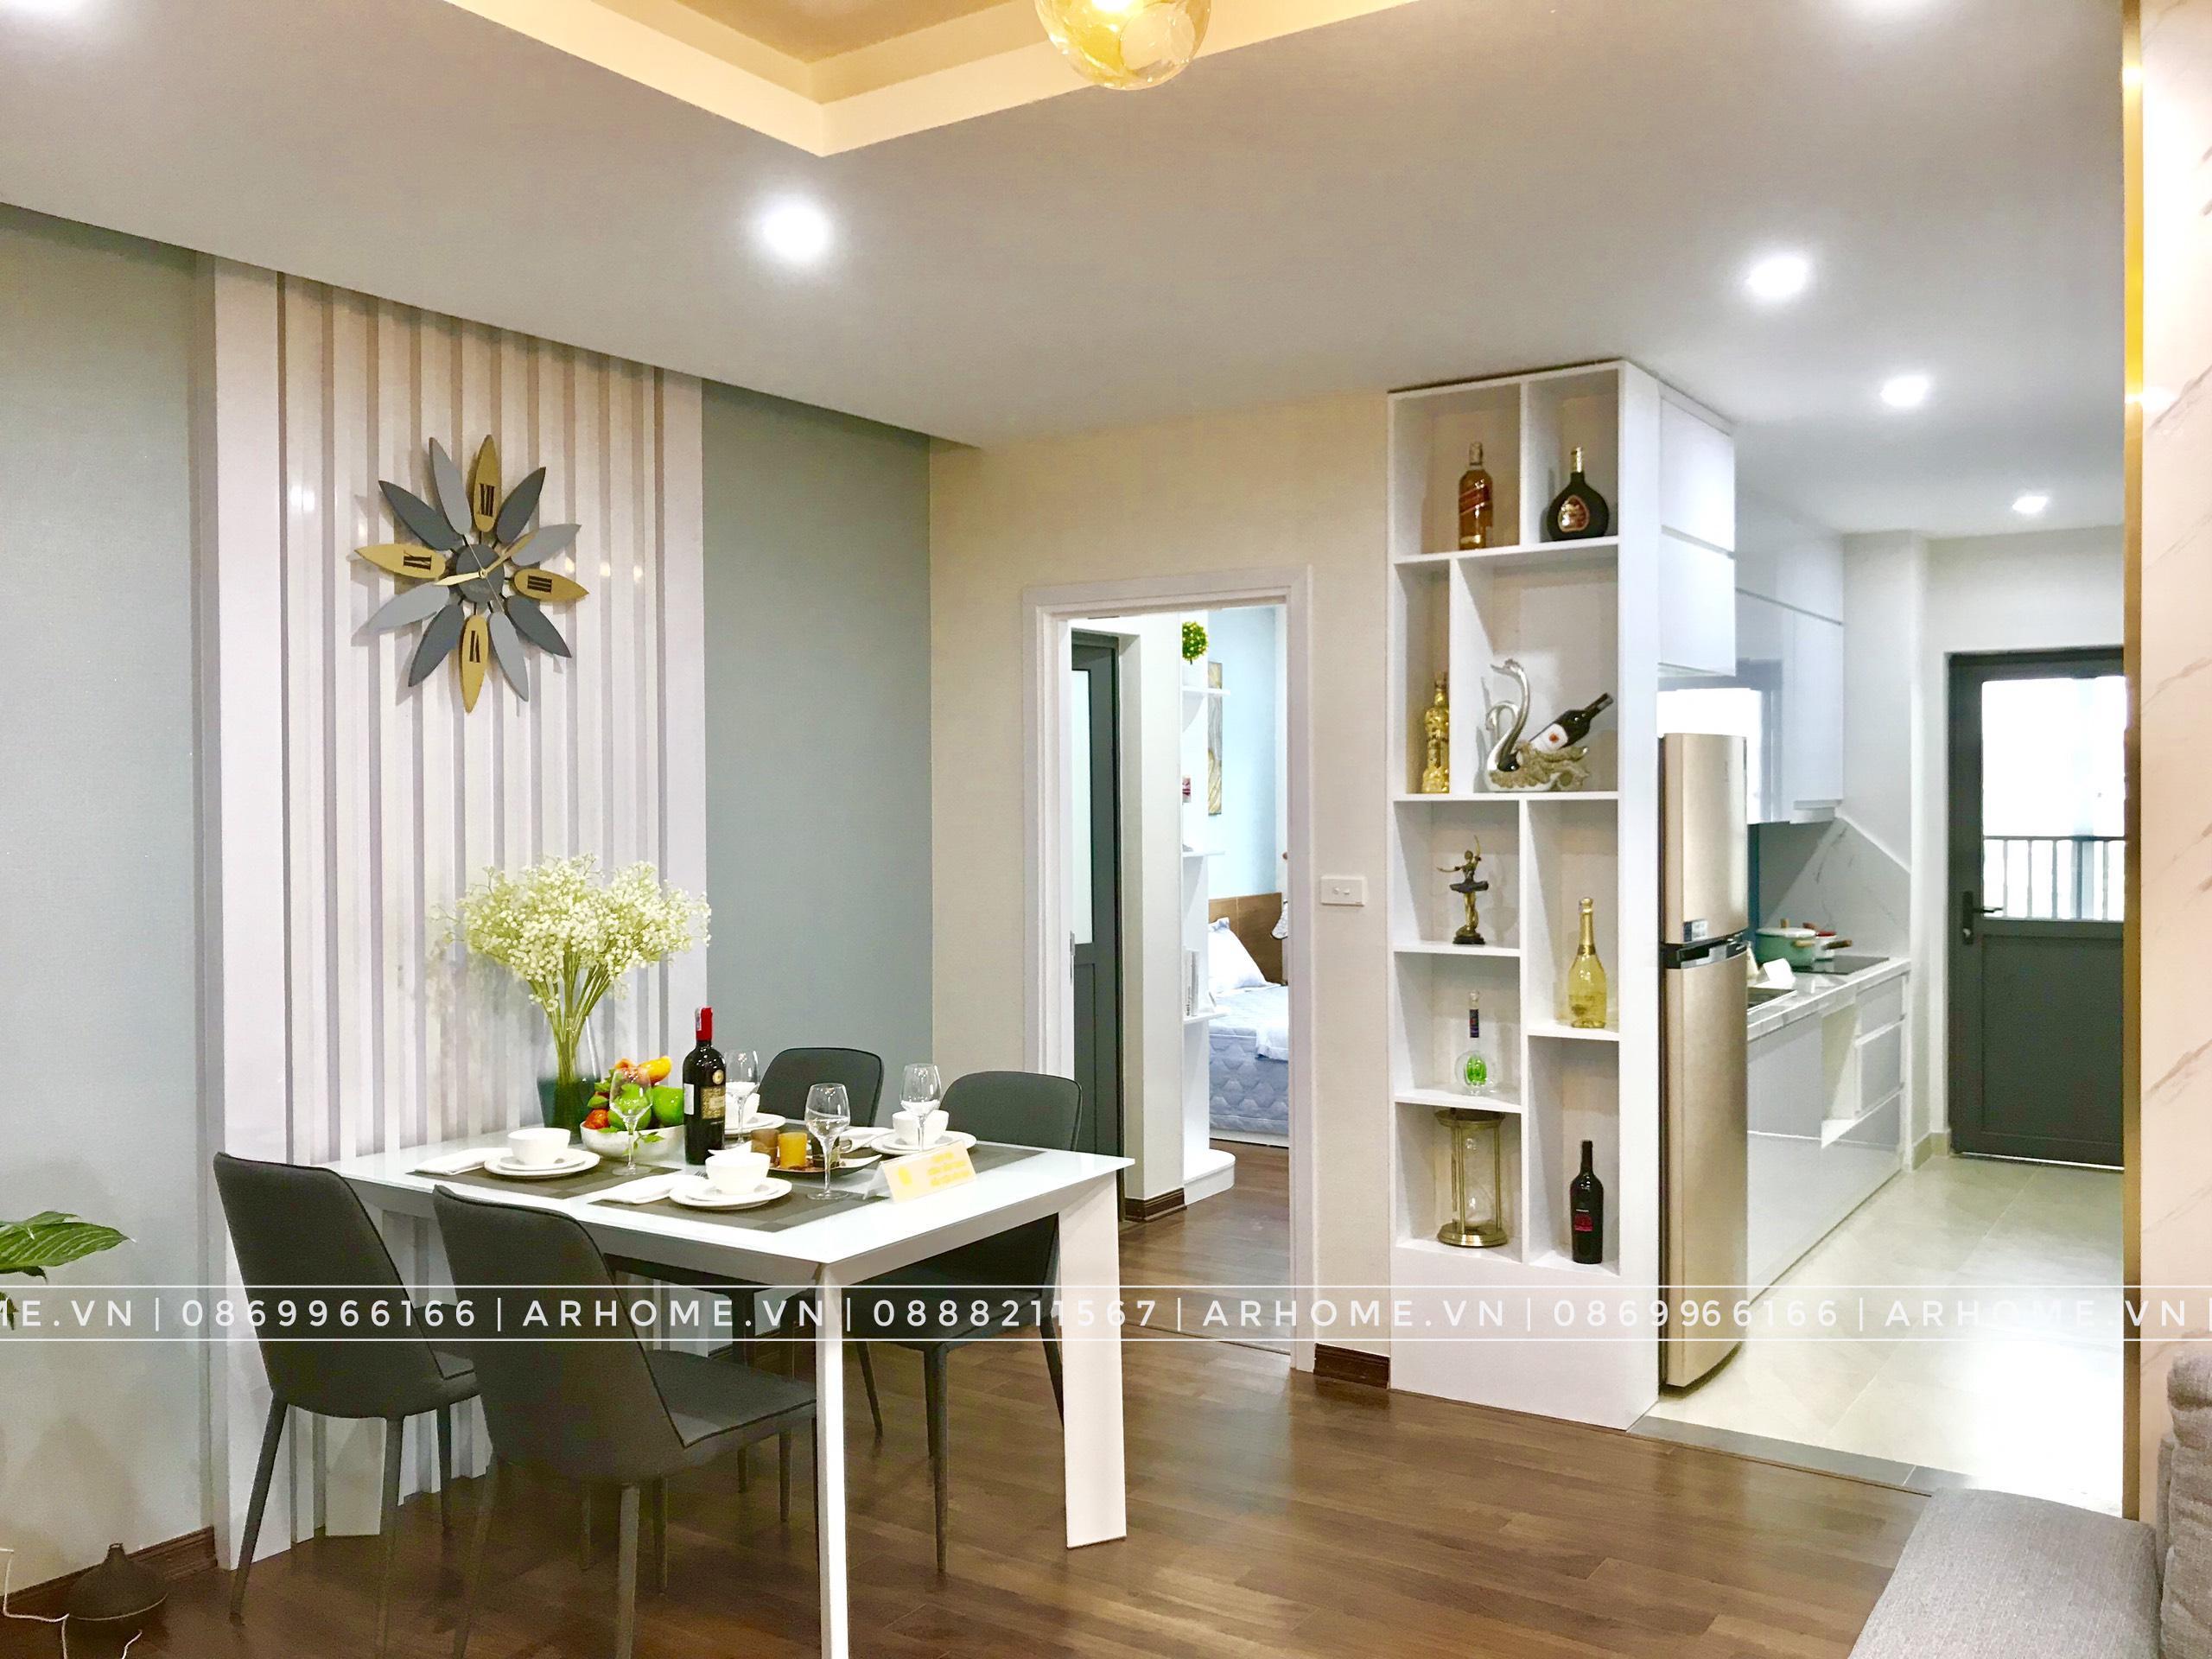 Thiết kế nội thất Chung Cư tại Hà Nội Đẹp xuất sắc với thực tế thi công nội thất căn hộ Tecco Complex 1595931538 0